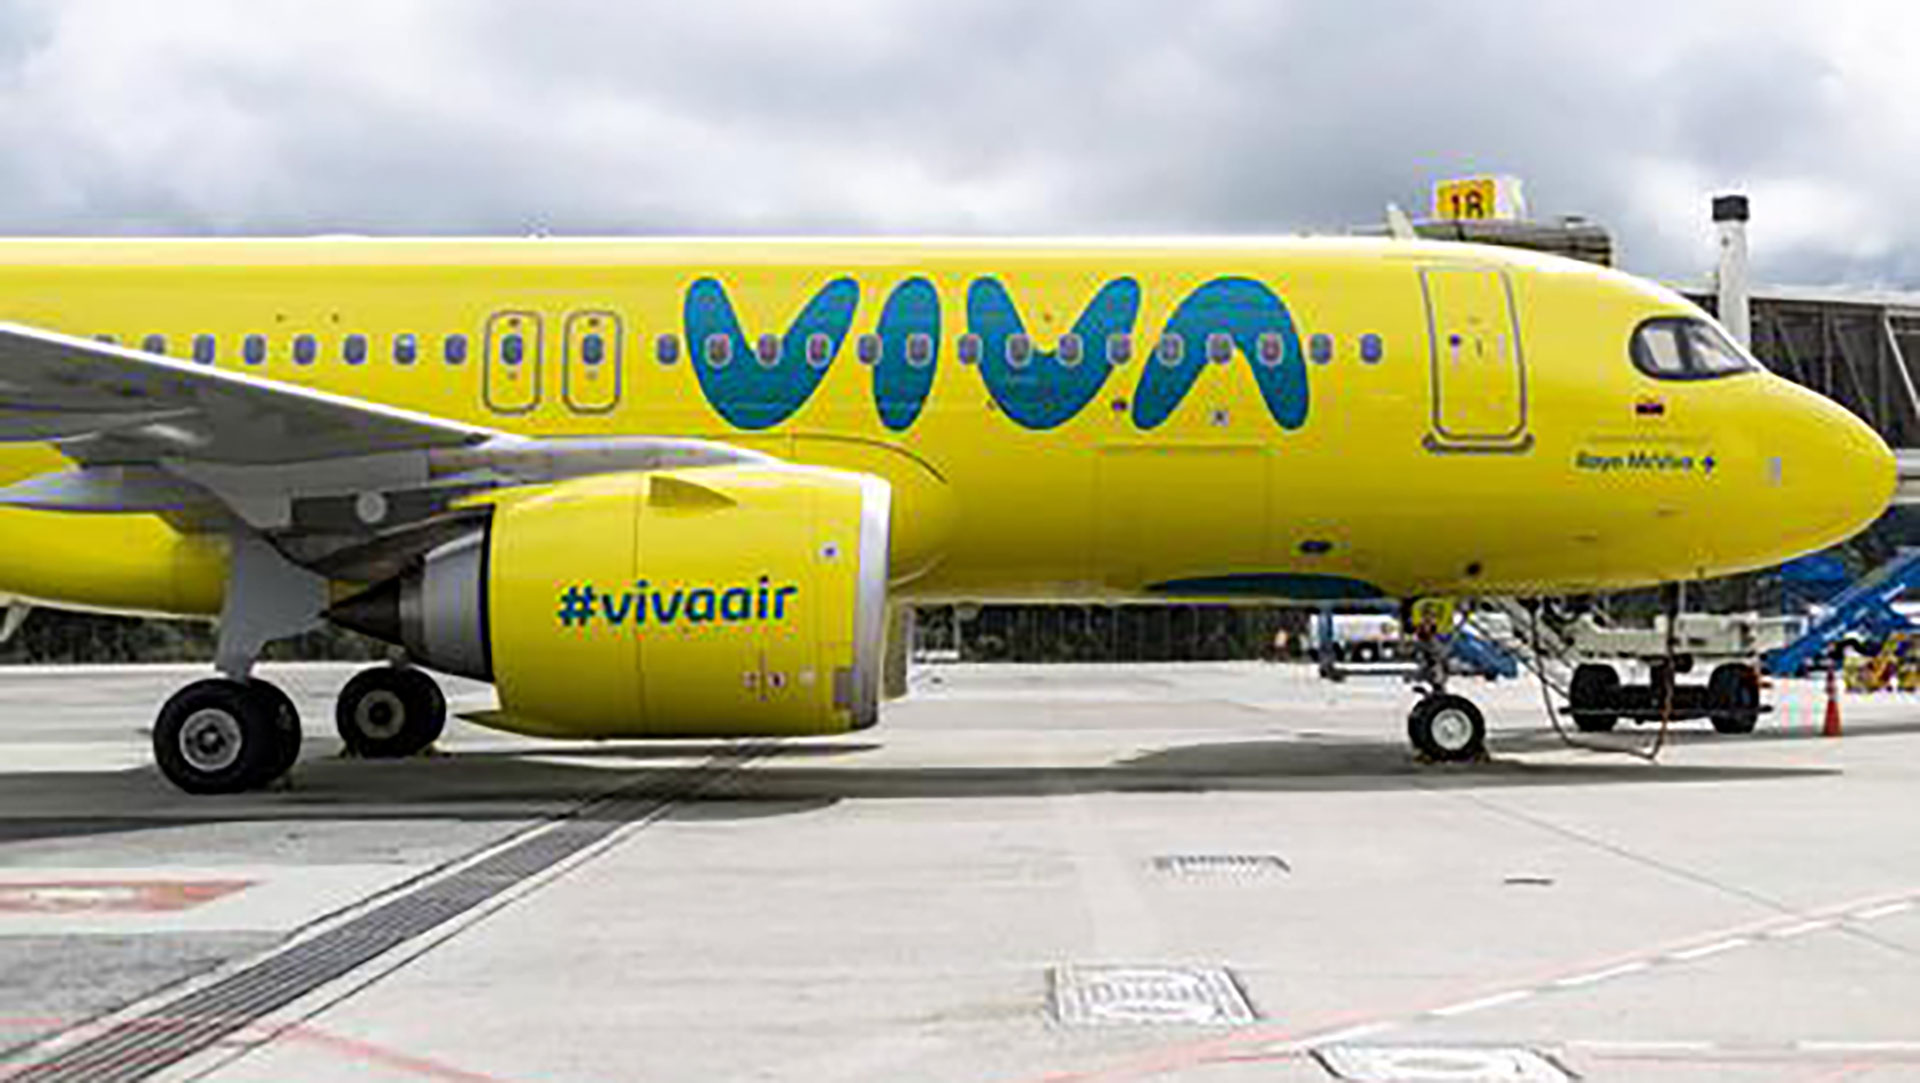 Cese de operaciones de Viva Air fue temporal: esa sería la respuesta de la aerolínea ante una posible denuncia por estafa en su contra